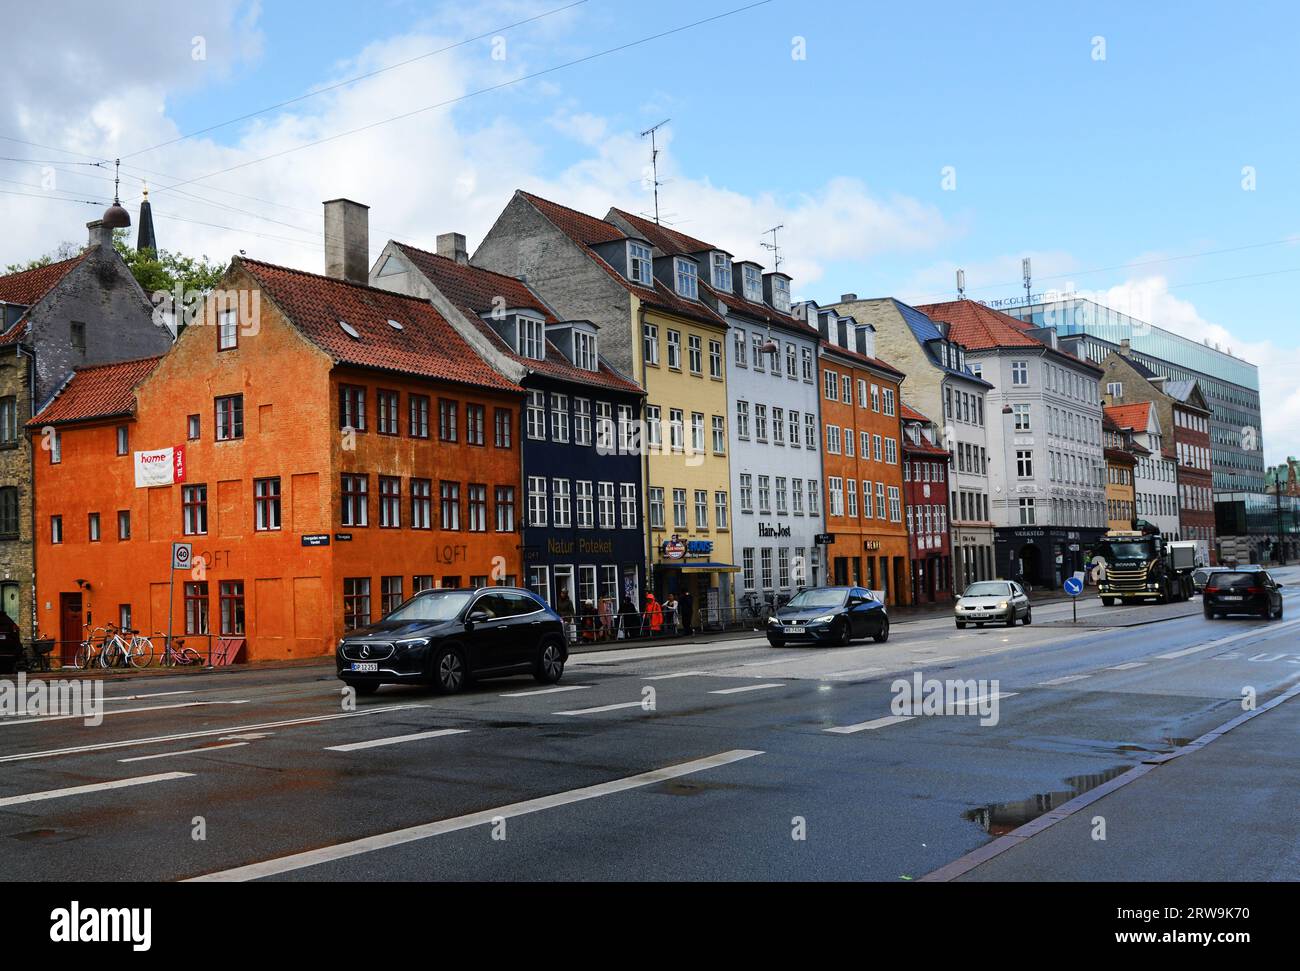 Colorful old buildings on Torvegade street in Christianshavn , Copenhagen, Denmark. Stock Photo